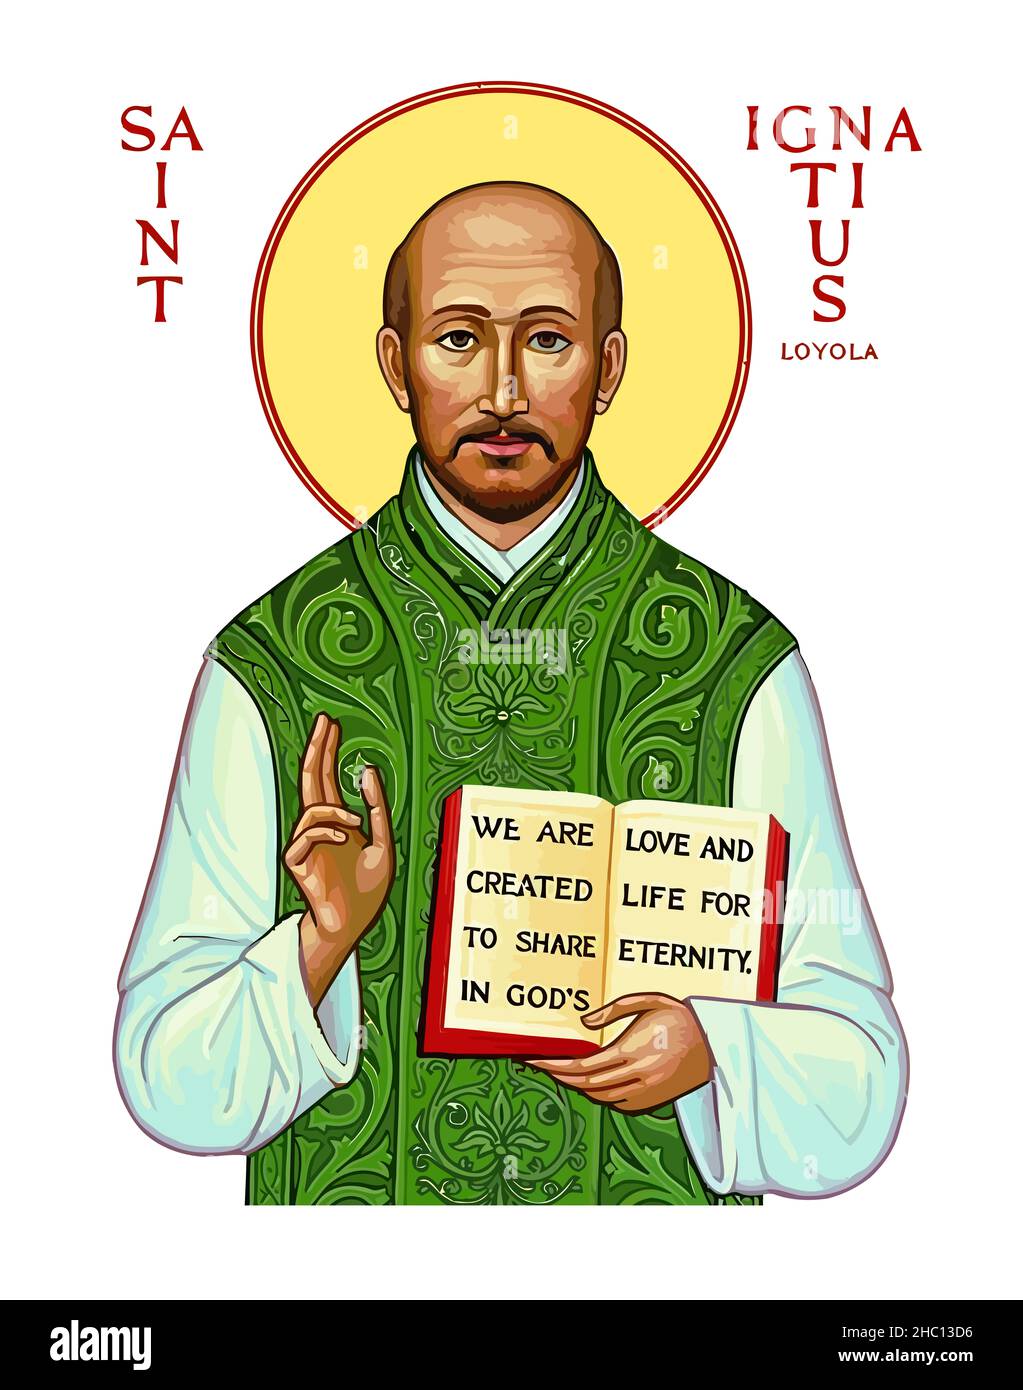 saint iginatius loyola holy faith religion illustration Stock Photo